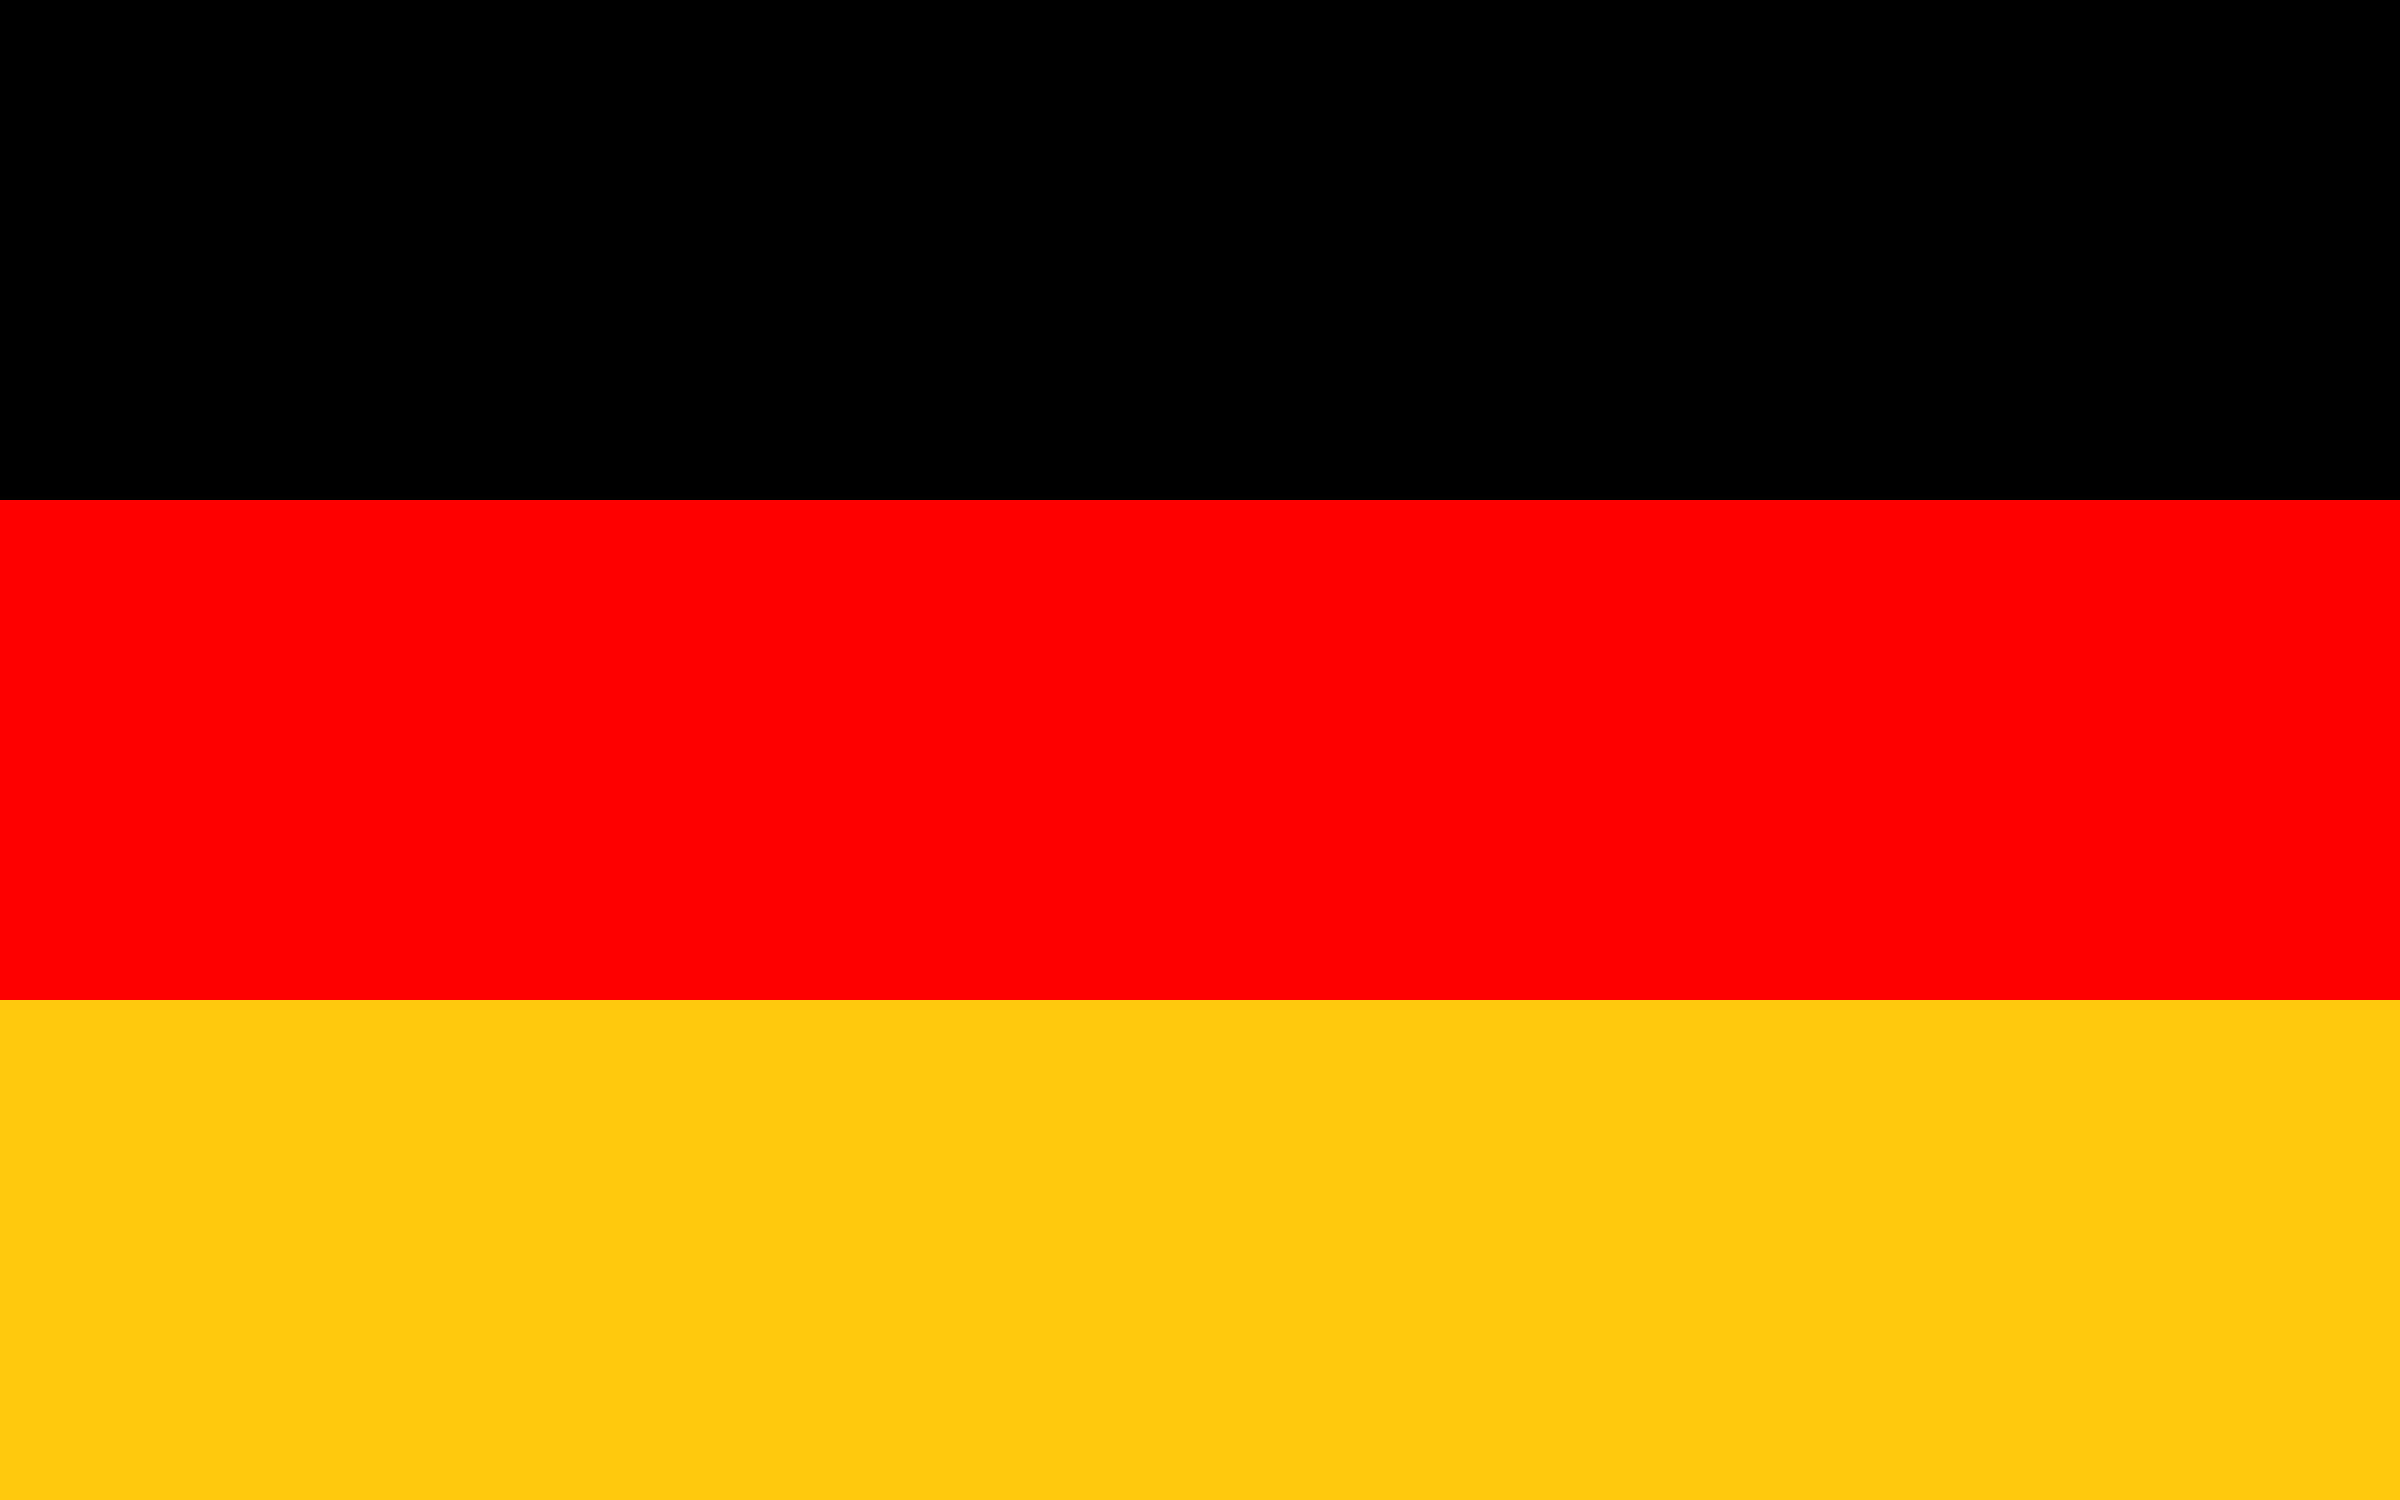 Lá cờ Đức